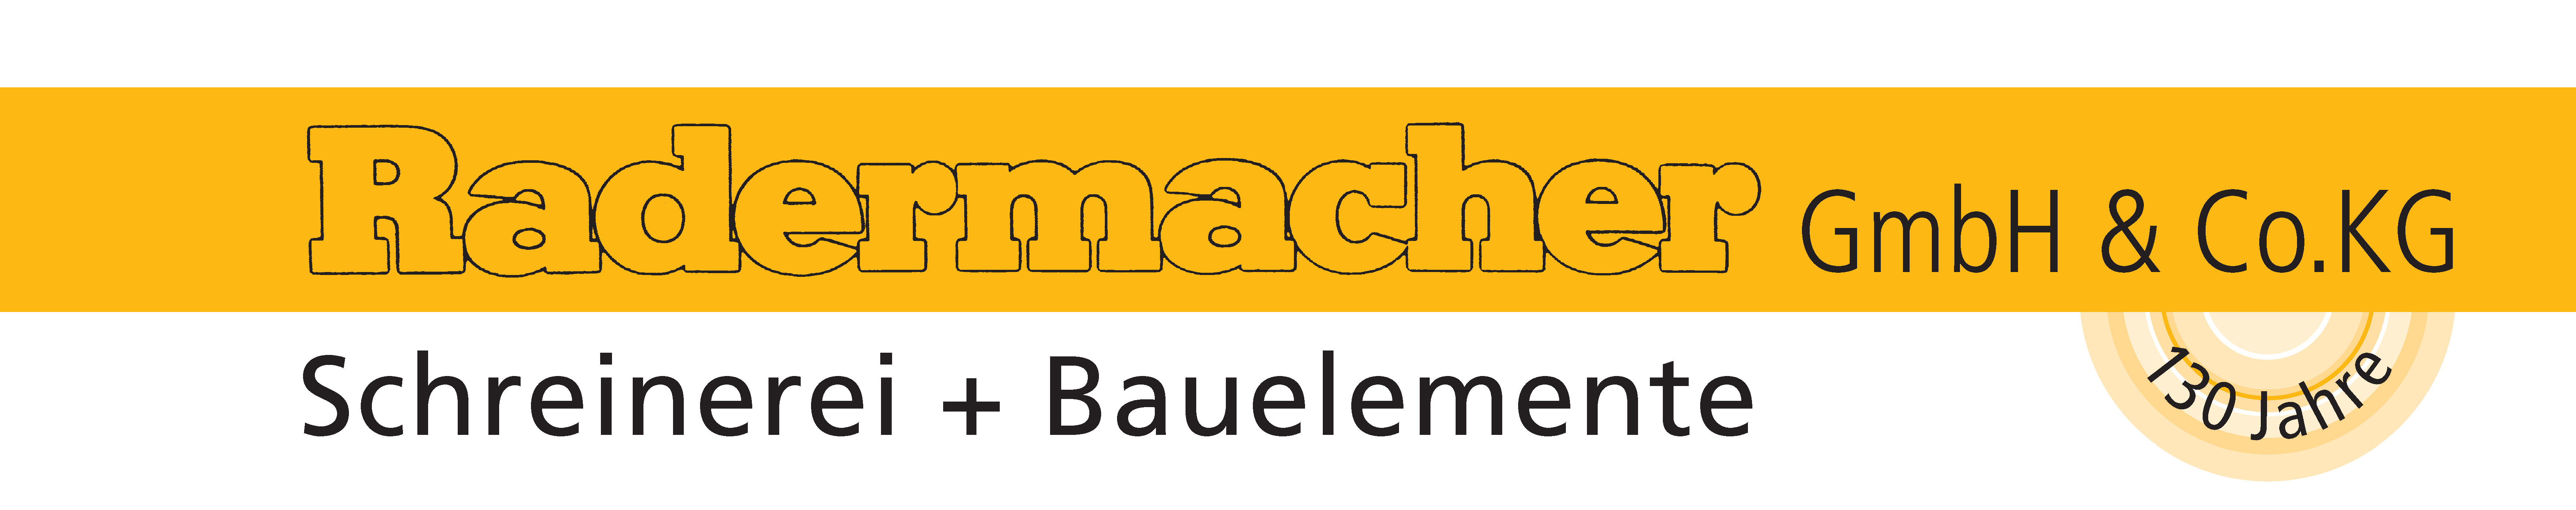 Radermacher GmbH&Co.KG Schreinerei+Bauelem